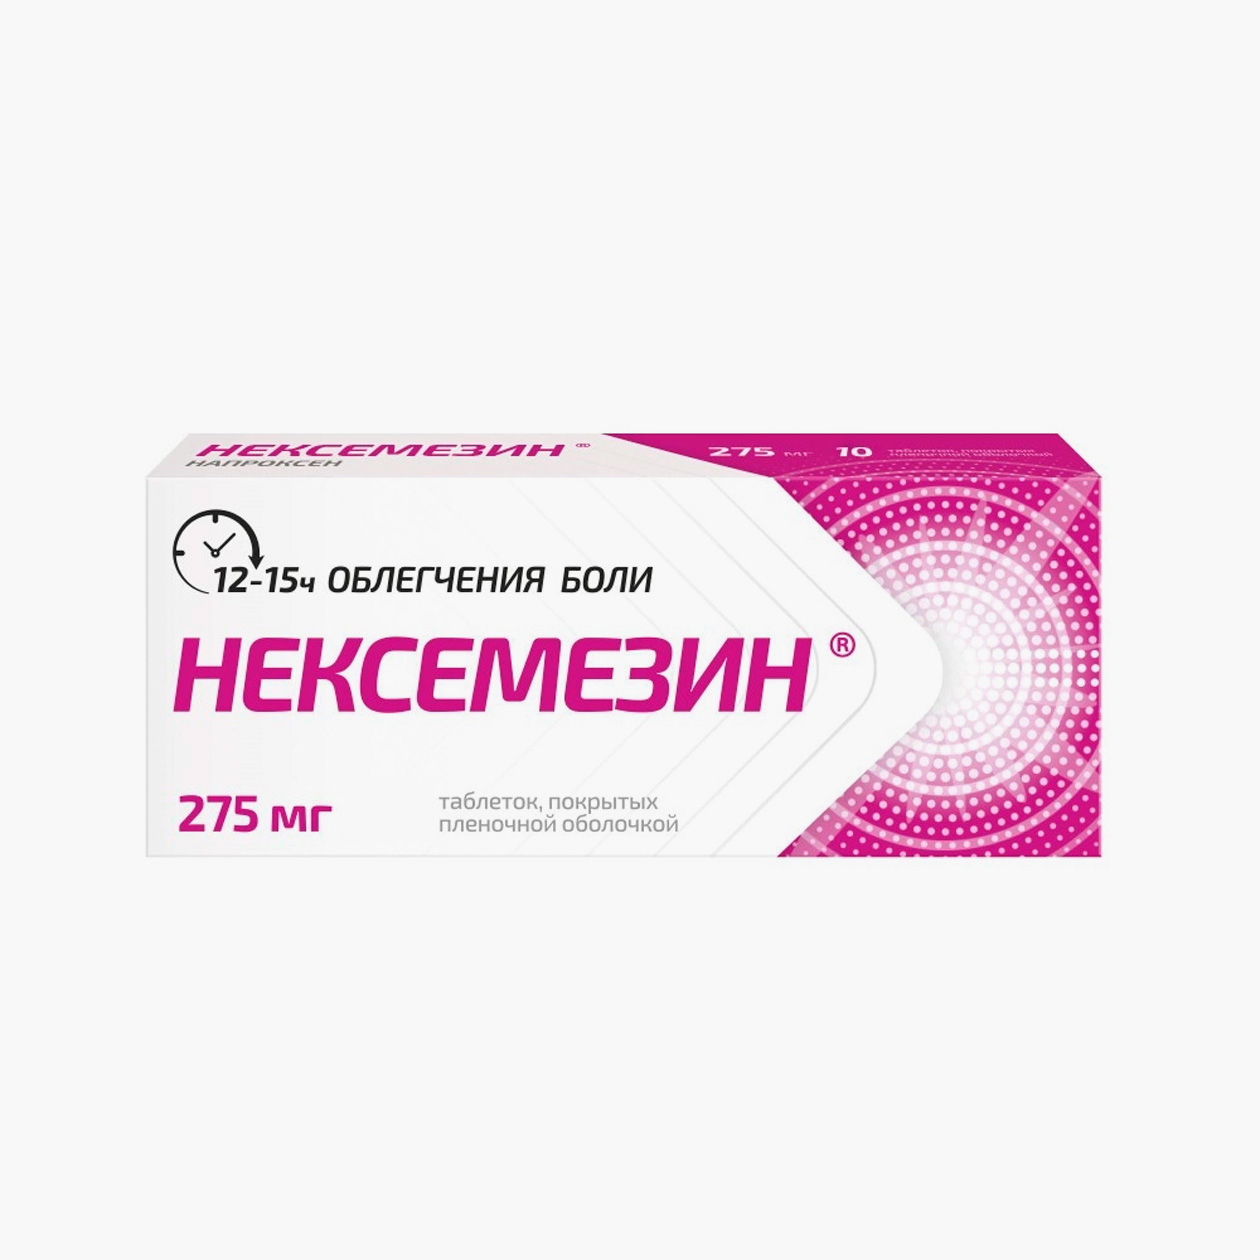 «Нексемезин» в таблетках с напроксеном. Источник: apteka.ru